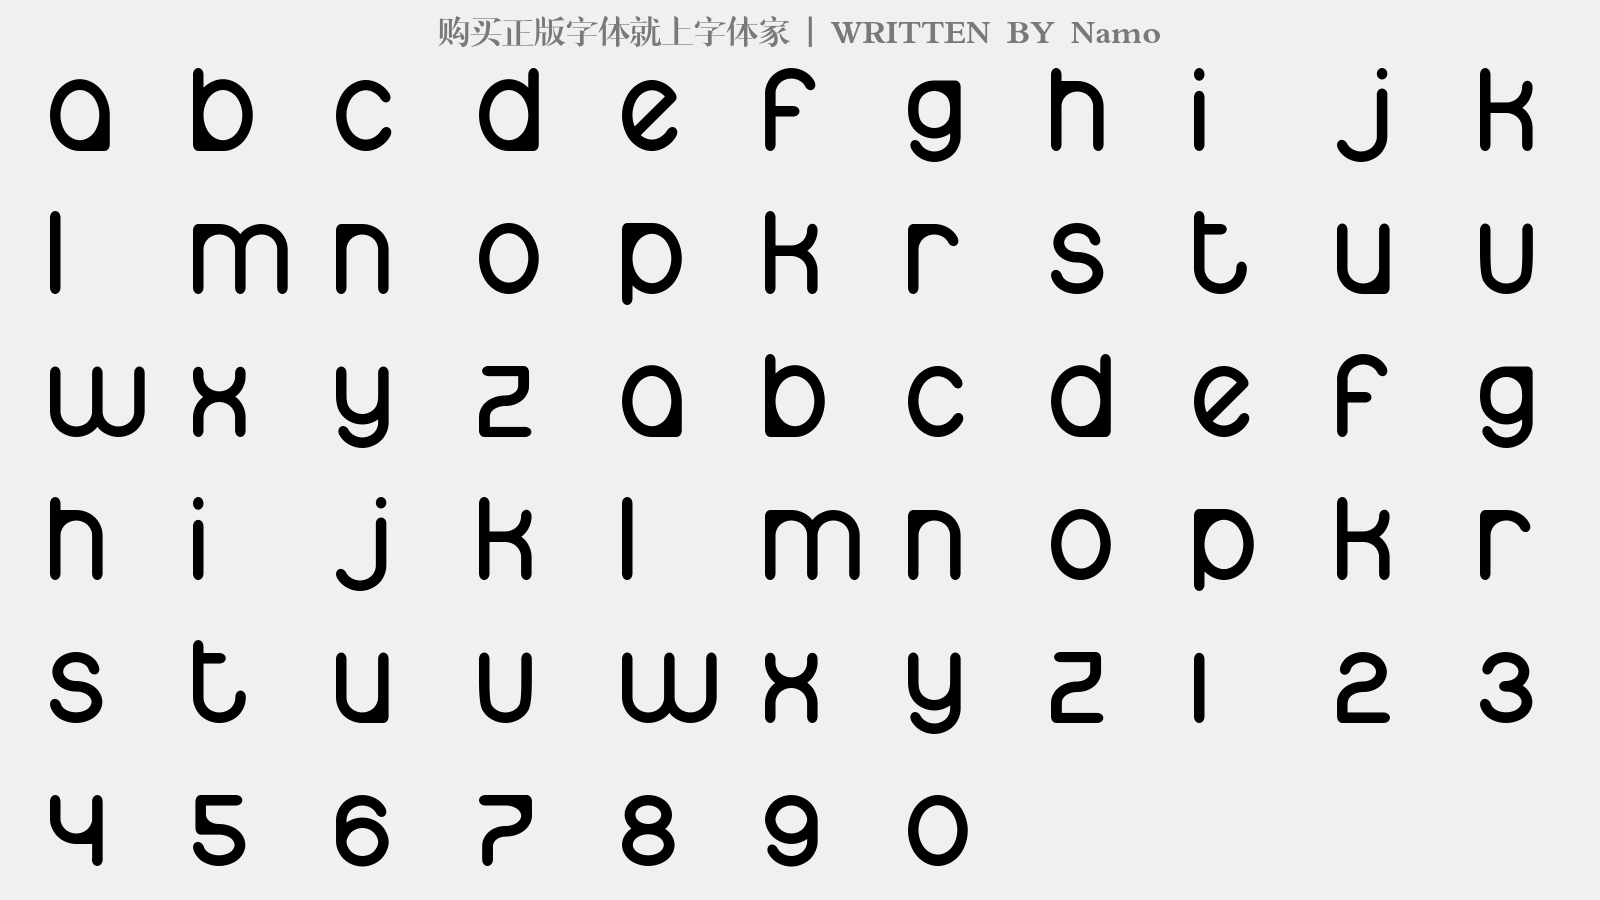 Namo - 大写字母/小写字母/数字